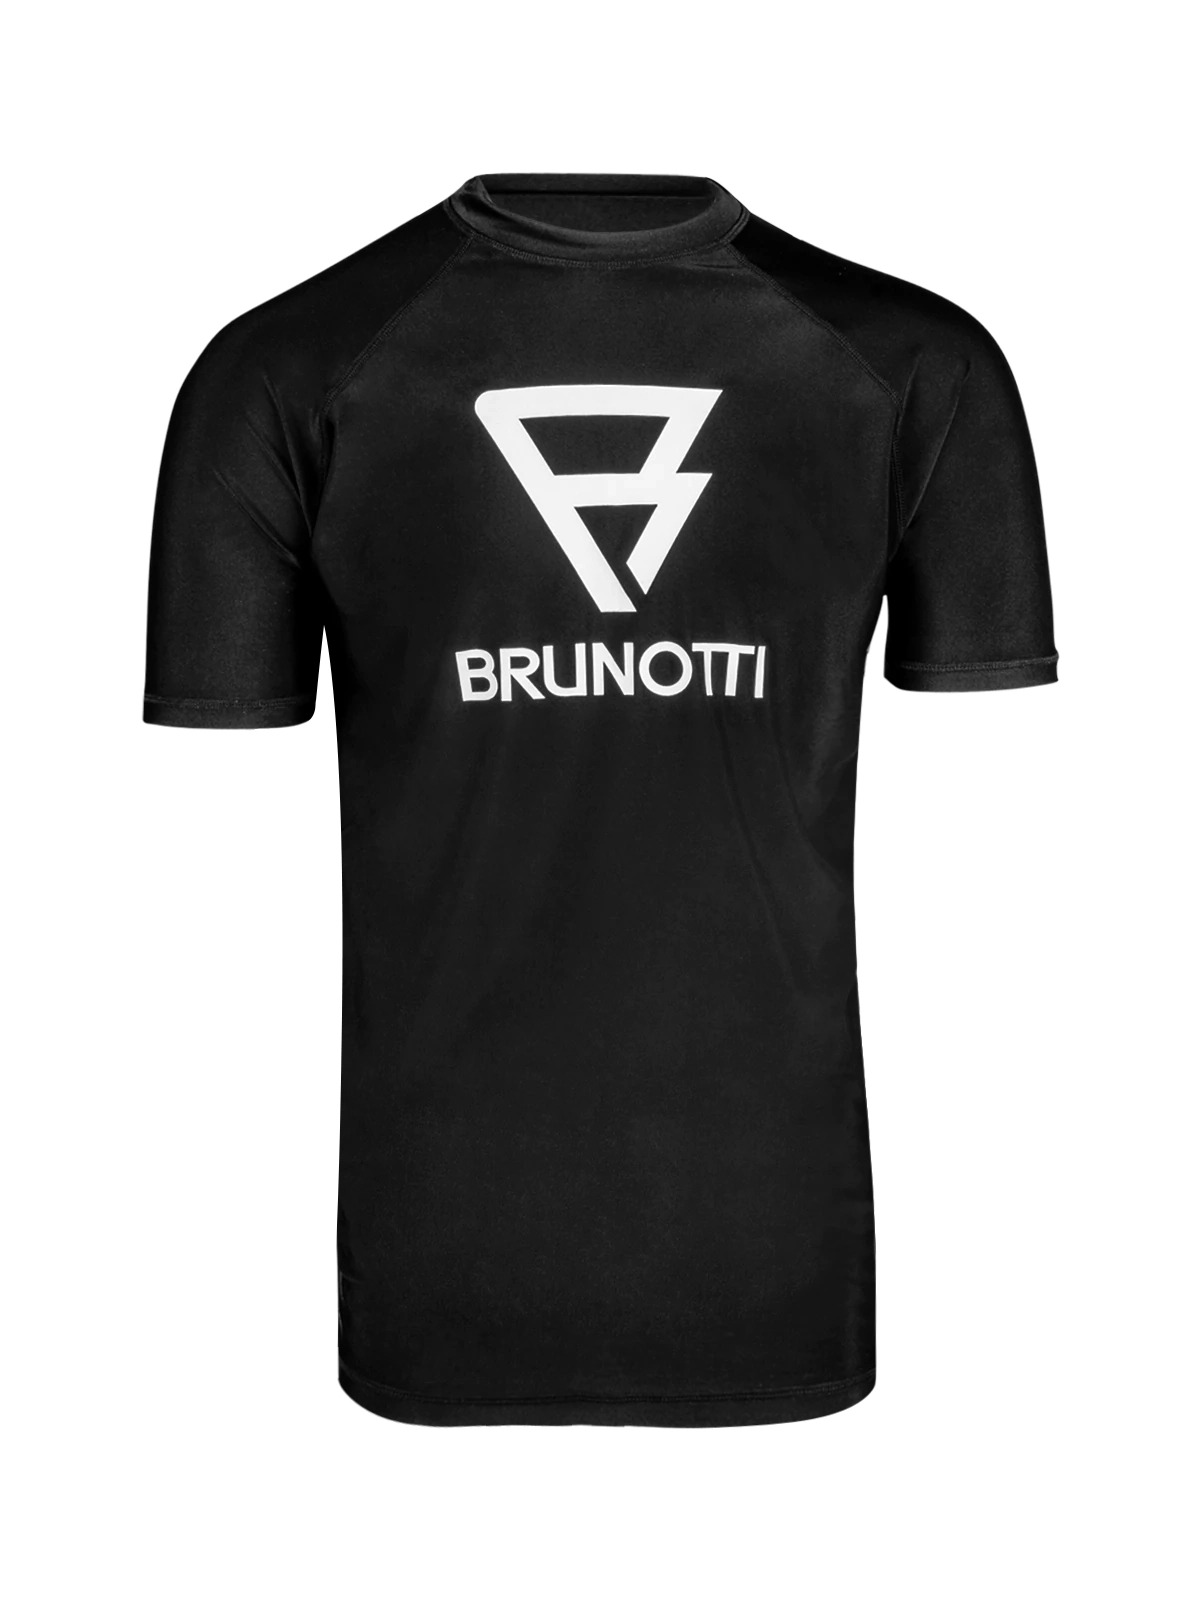 monteren Verdorie biografie Brunotti Surflino uv-shirt heren zwart van badmode